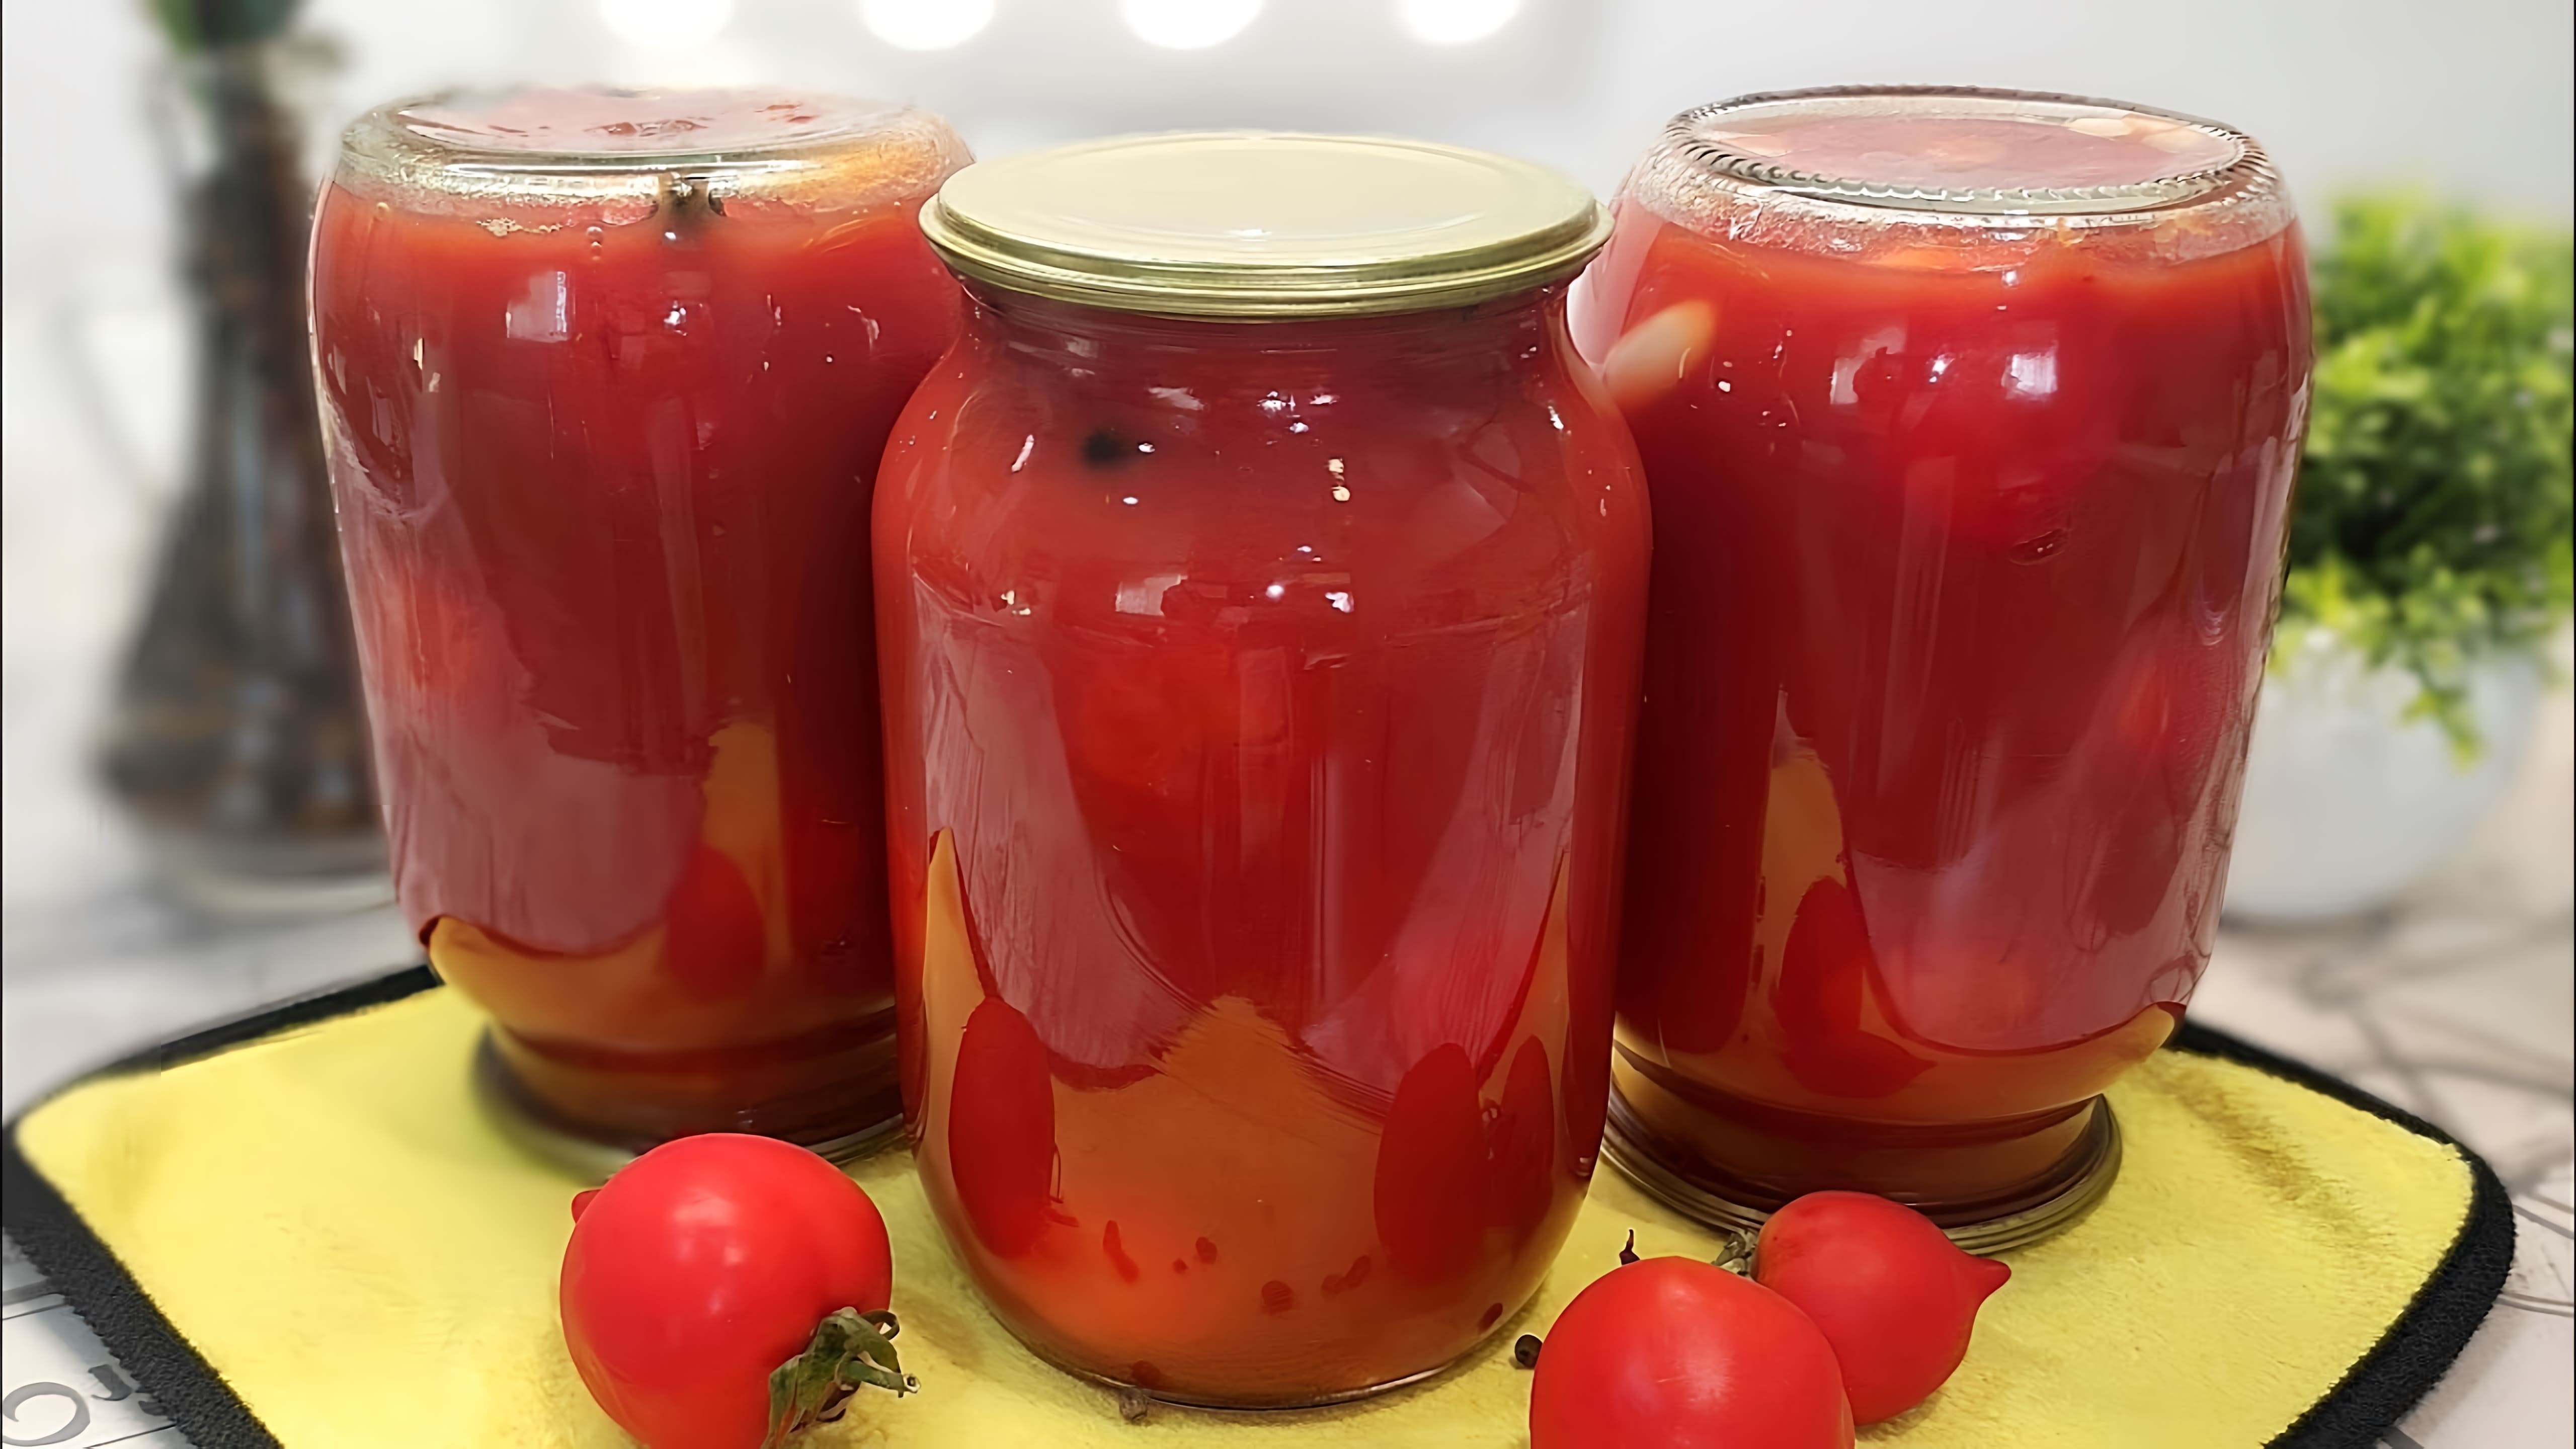 В данном видео демонстрируется рецепт приготовления помидоров в магазинном томатном соке на зиму без стерилизации